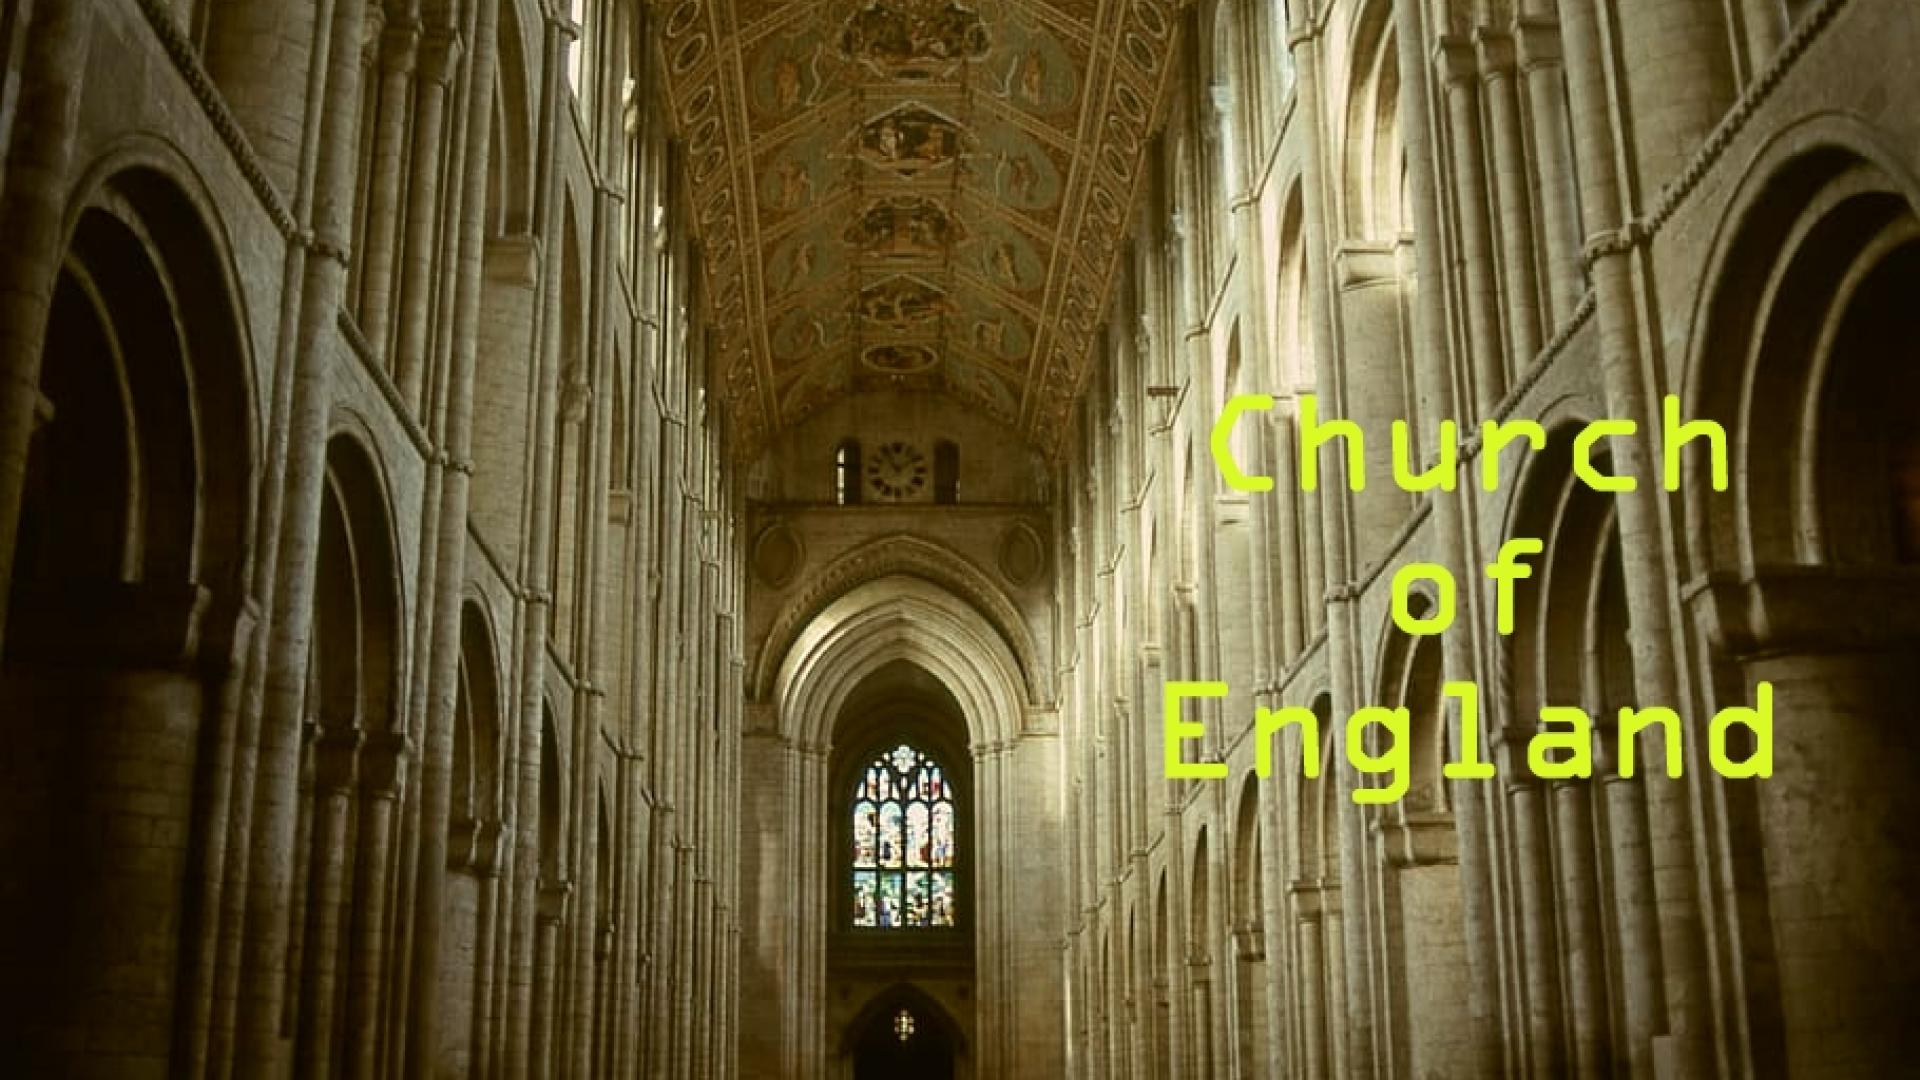 Anglicaanse kathedraal met de tekst 'Church of England'